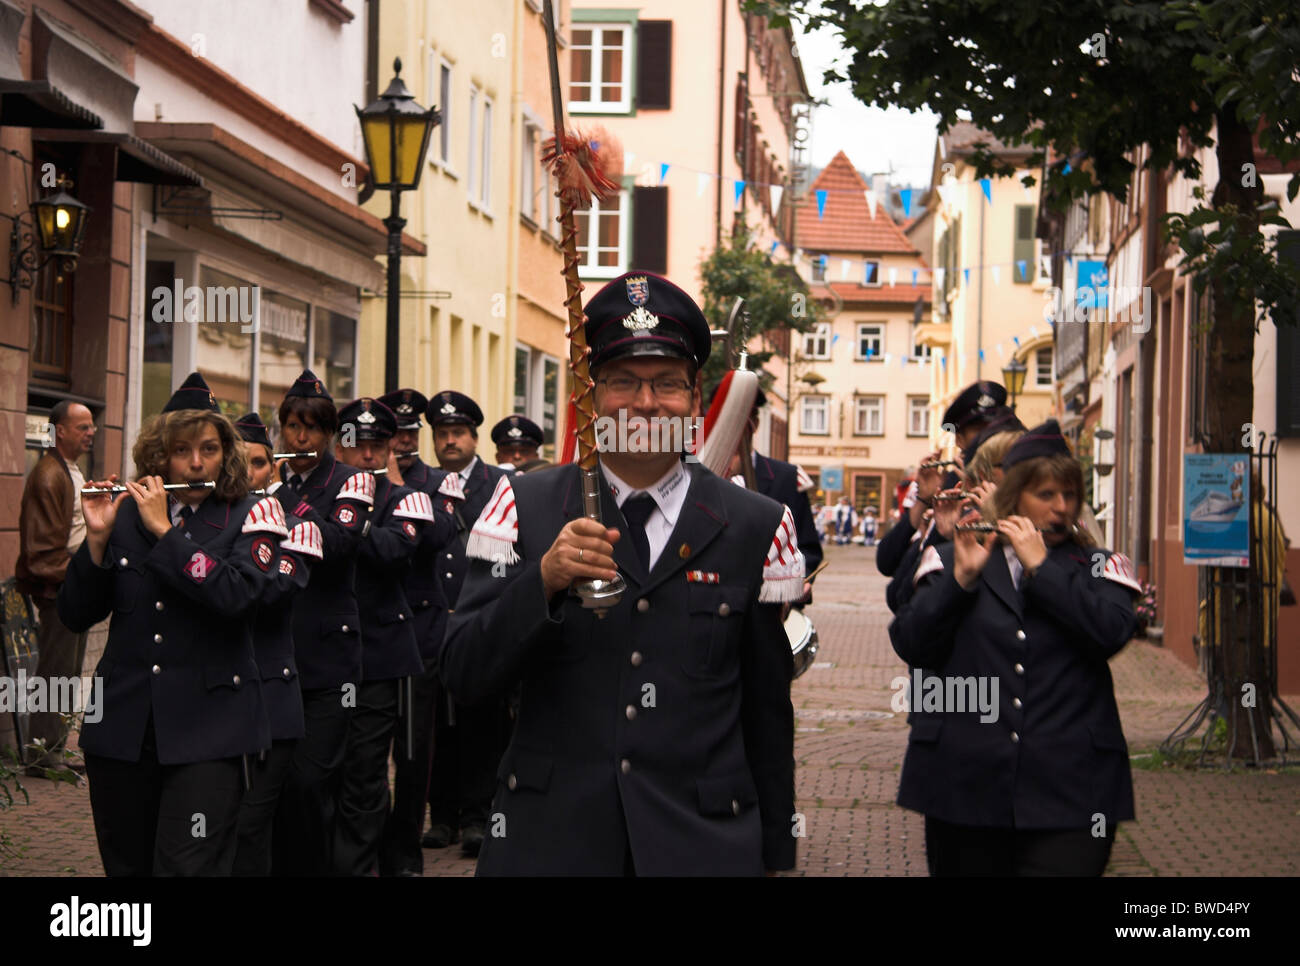 Porte-étendard, musiciens en uniforme, street parade, célébrations jubilaires, Eberbach, Allemagne Banque D'Images